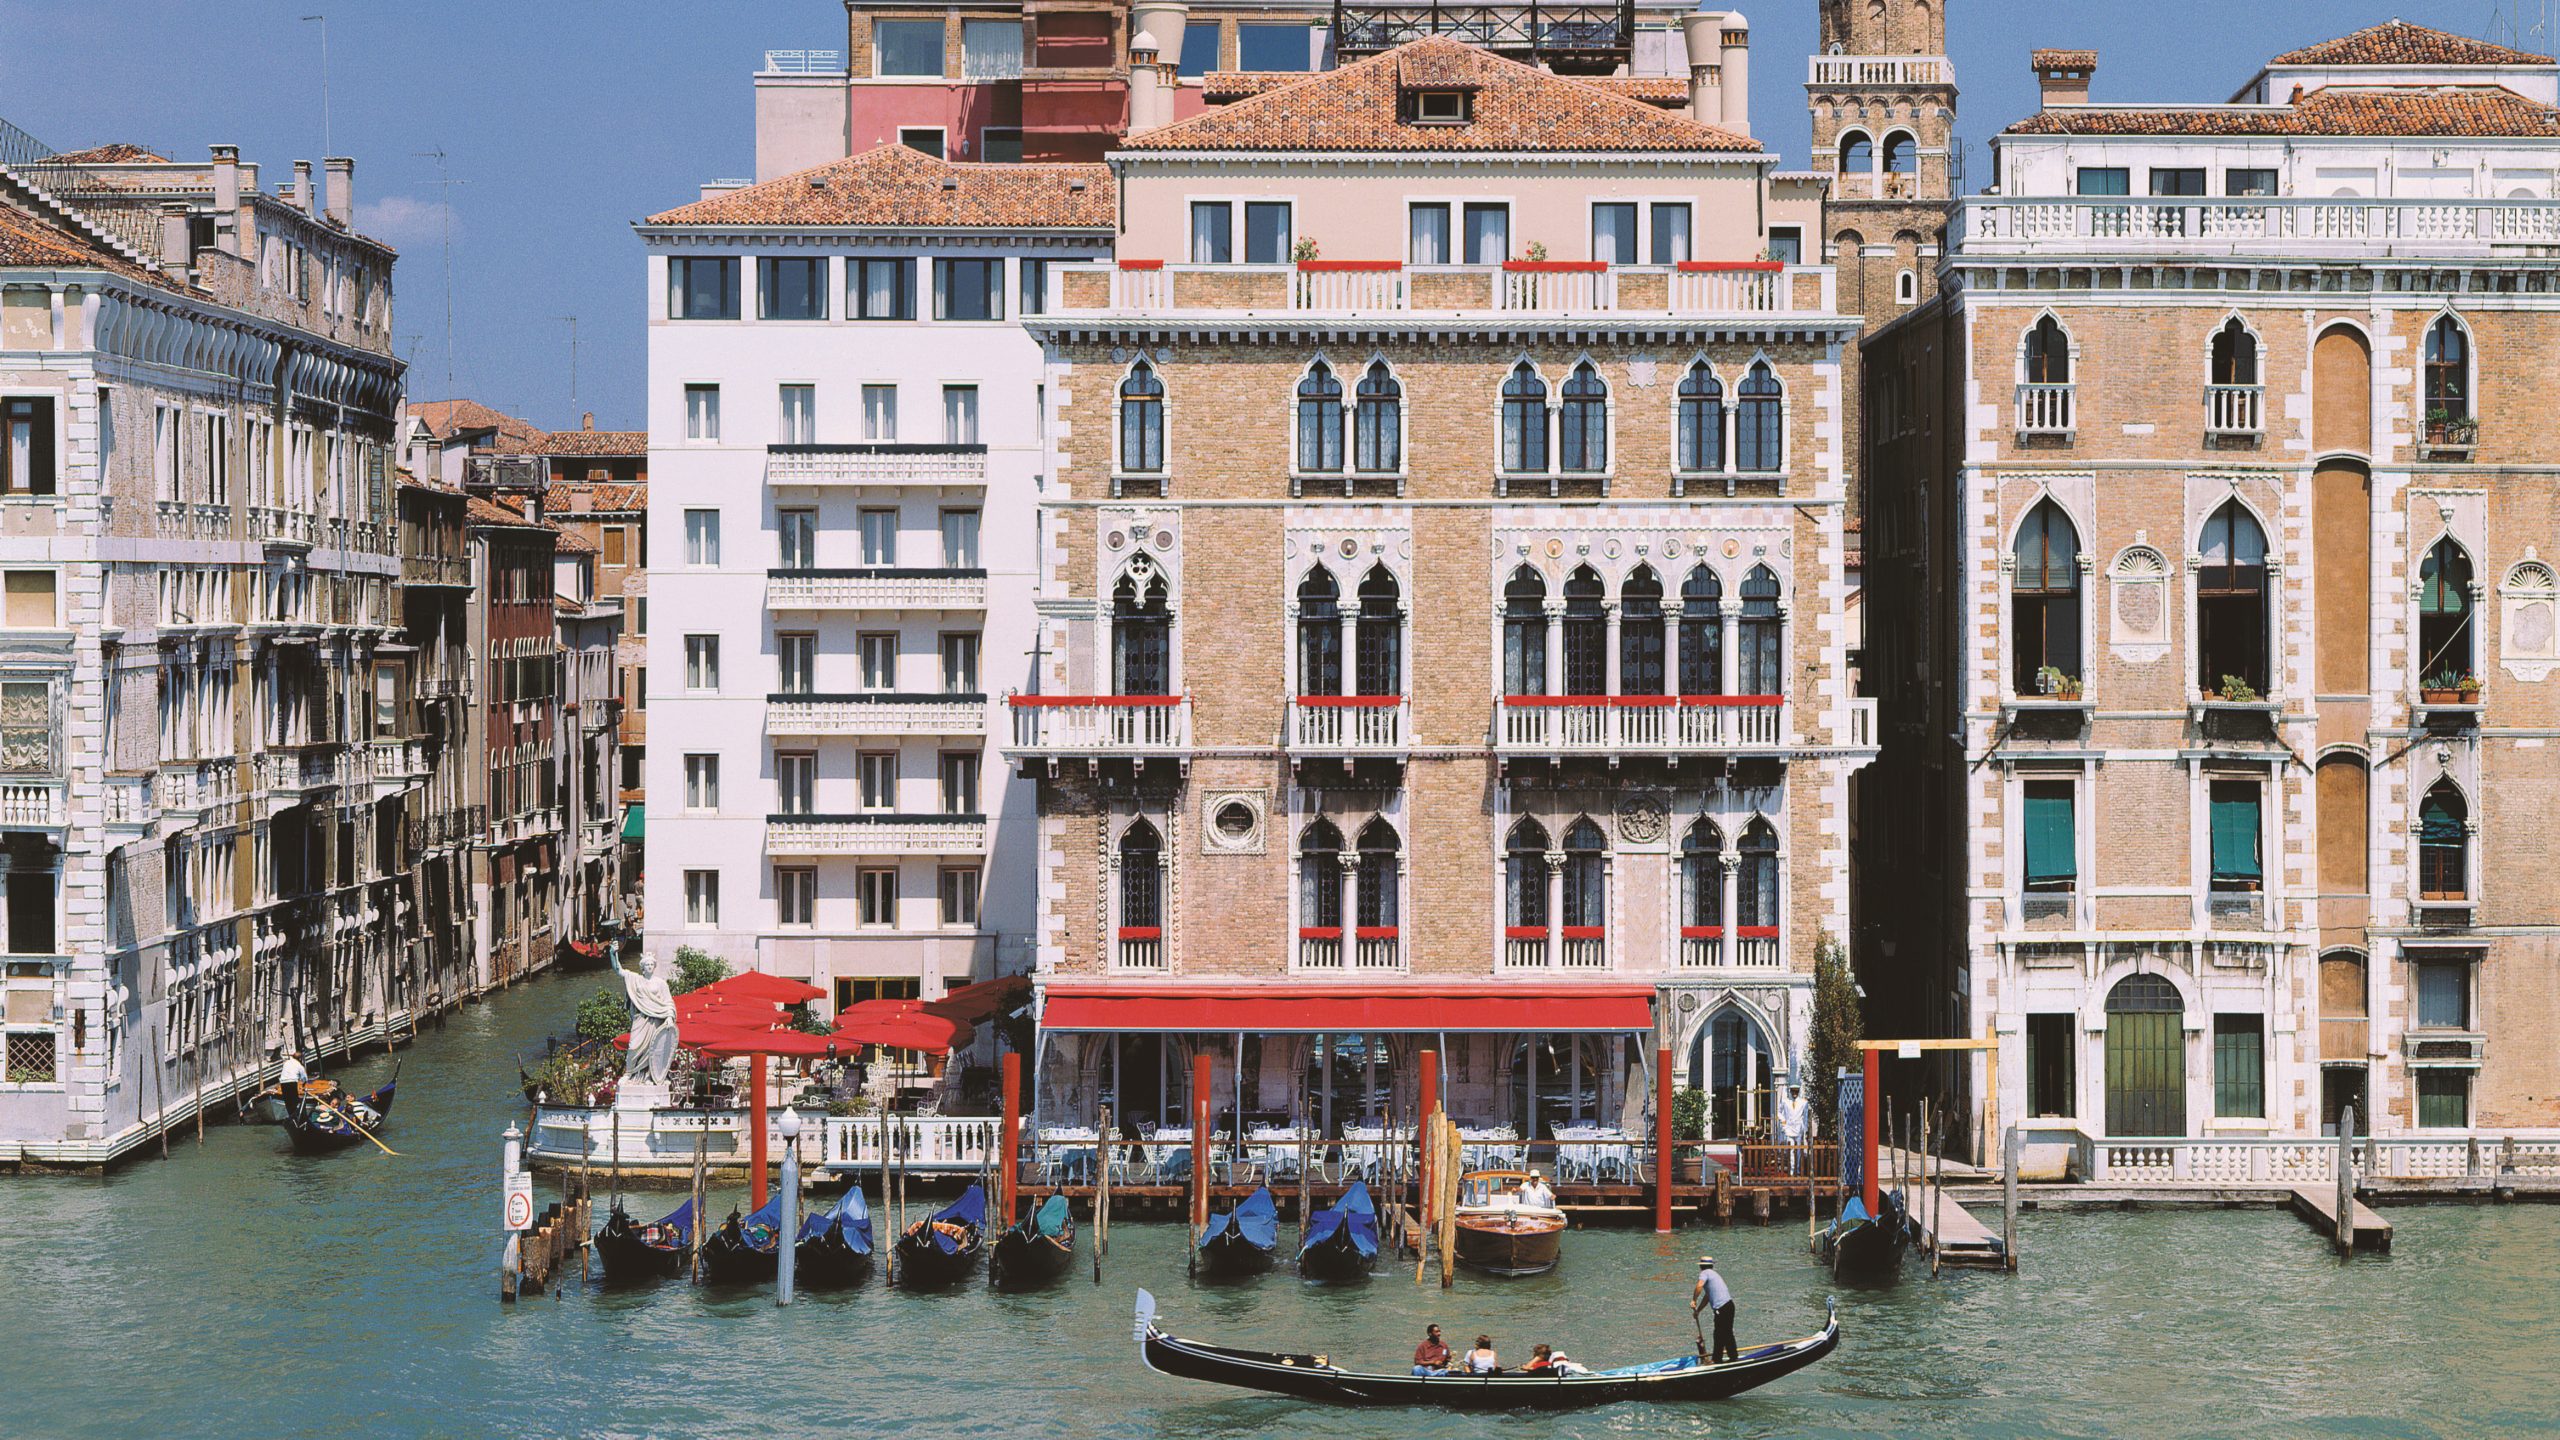 Rosewood Hotel & Resorts Vai Administrar o Lendário Hotel Bauer em Veneza, Itália.